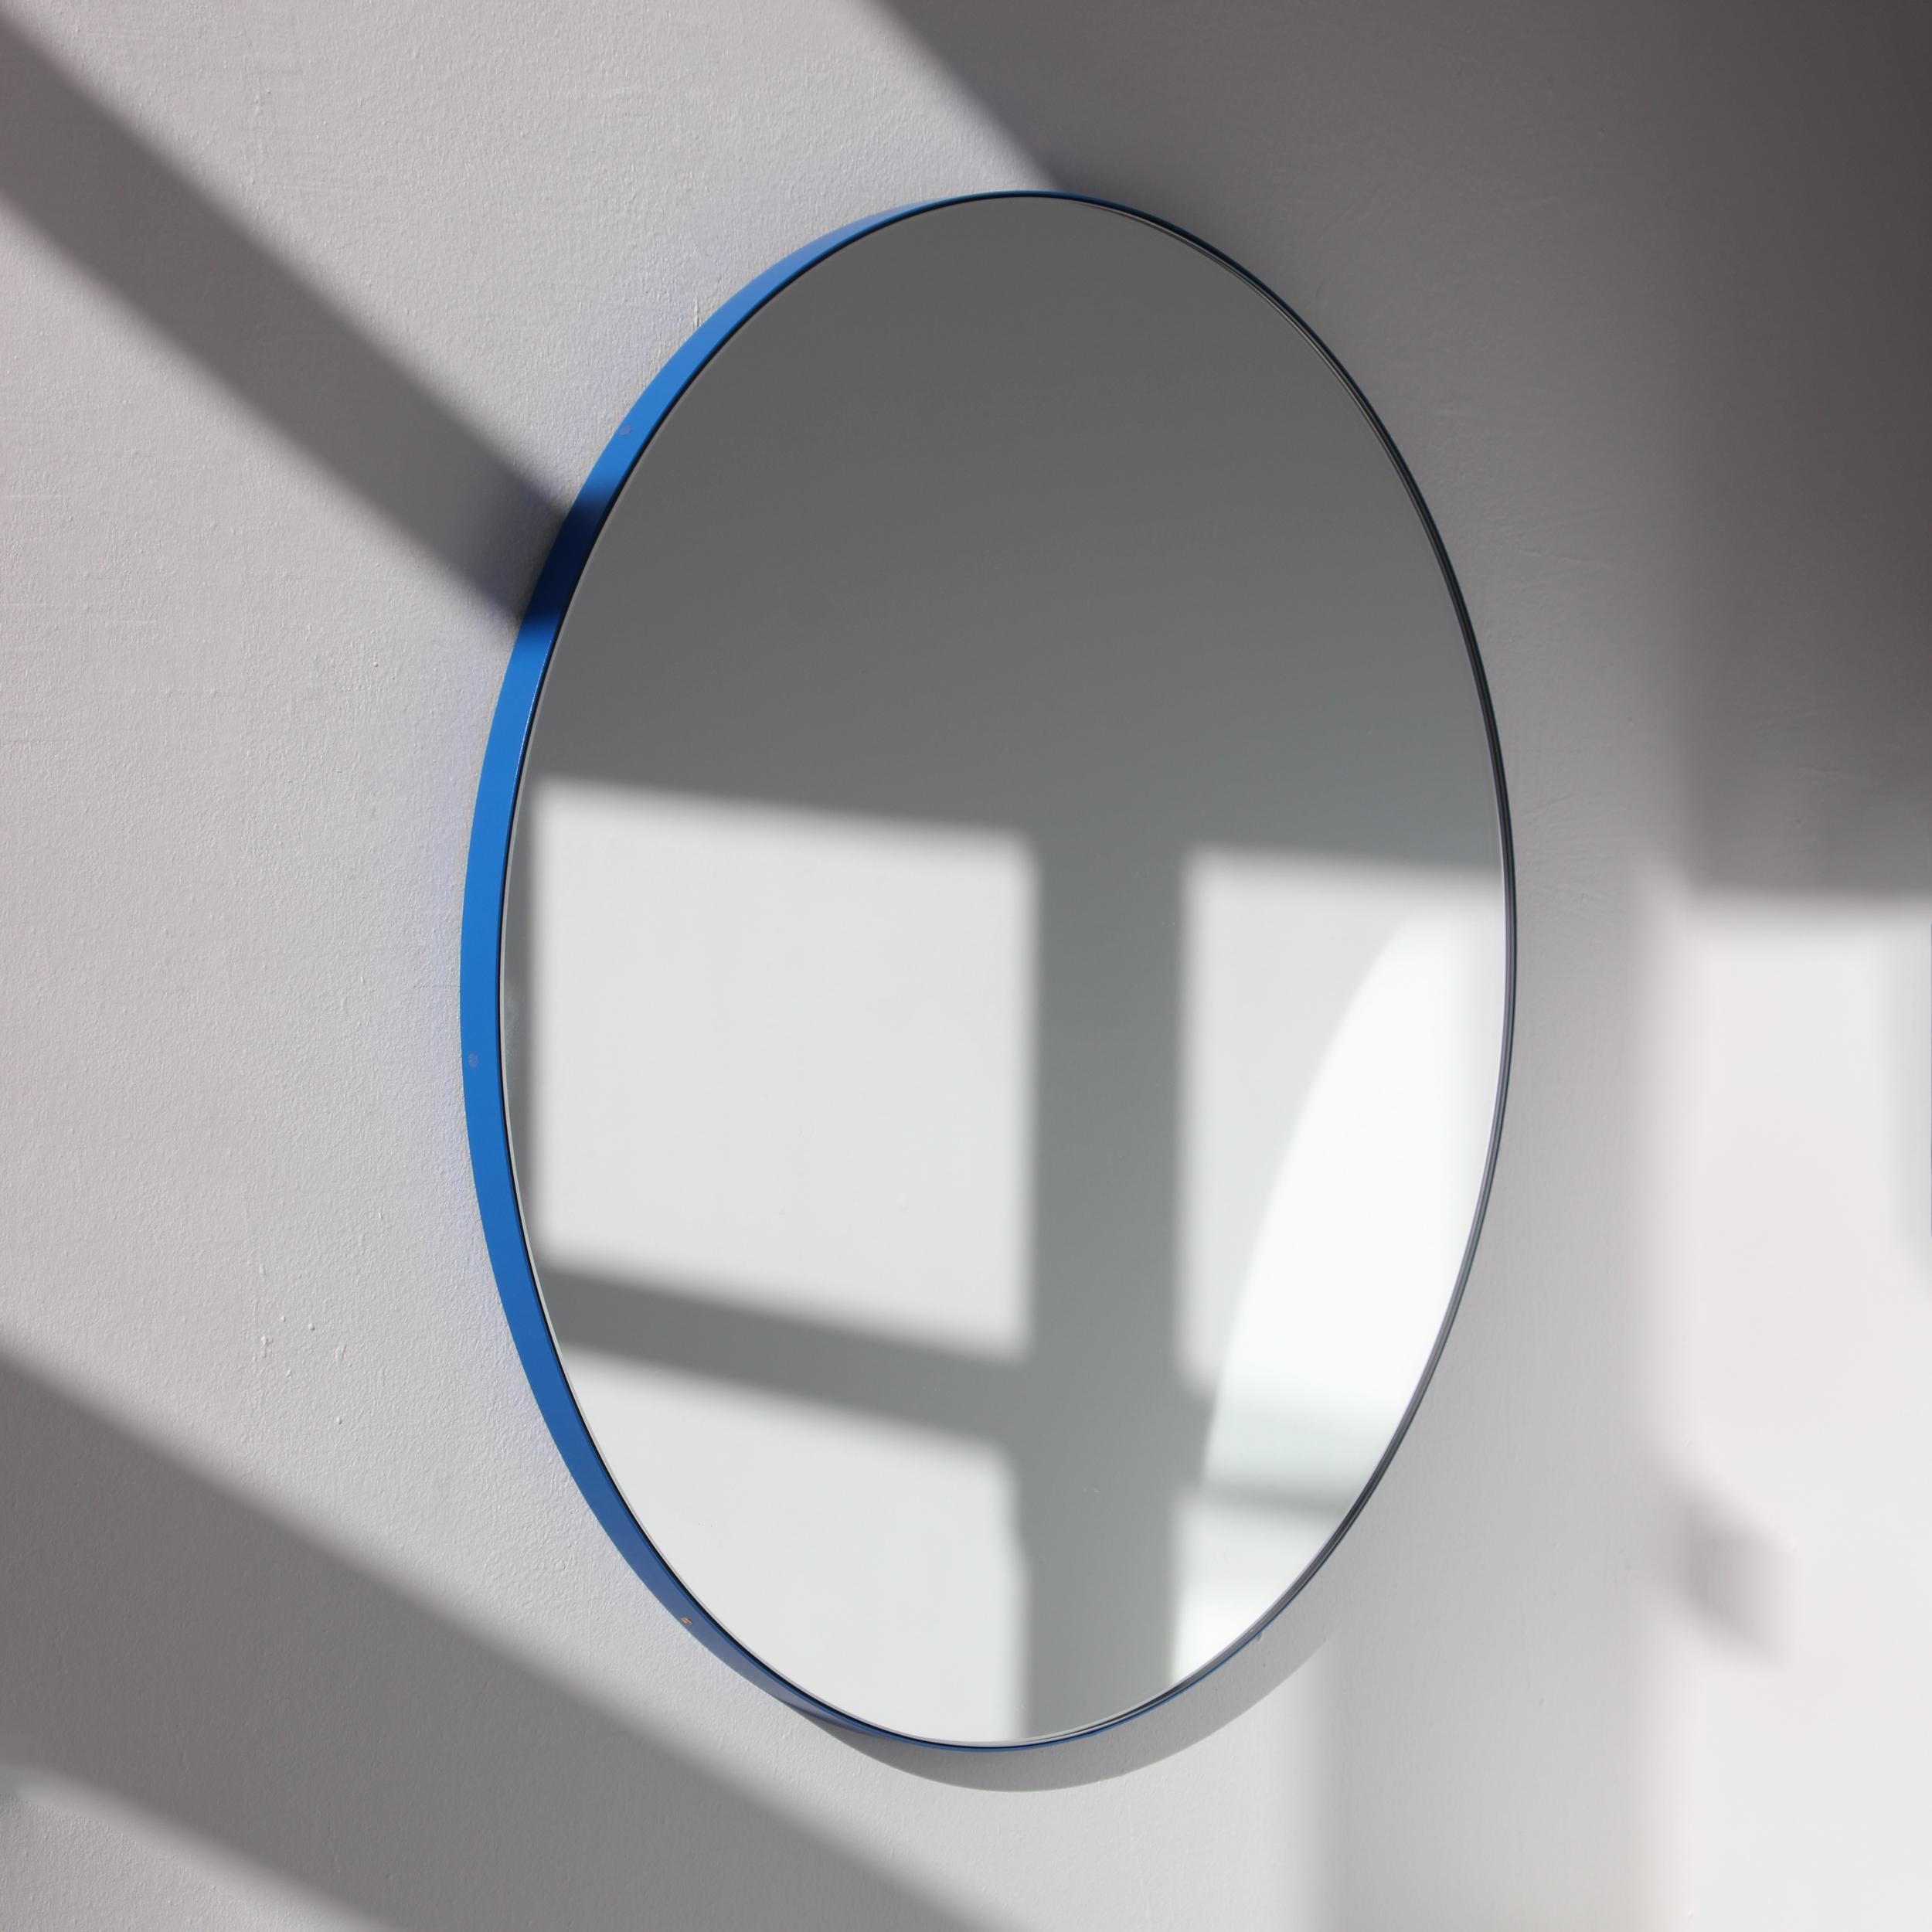 Miroir rond minimaliste avec un cadre moderne en aluminium peint par poudrage en bleu. Conçu et fabriqué à la main à Londres, au Royaume-Uni.

Les miroirs de taille moyenne, grande et extra-large (60, 80 et 100 cm) sont équipés d'un ingénieux